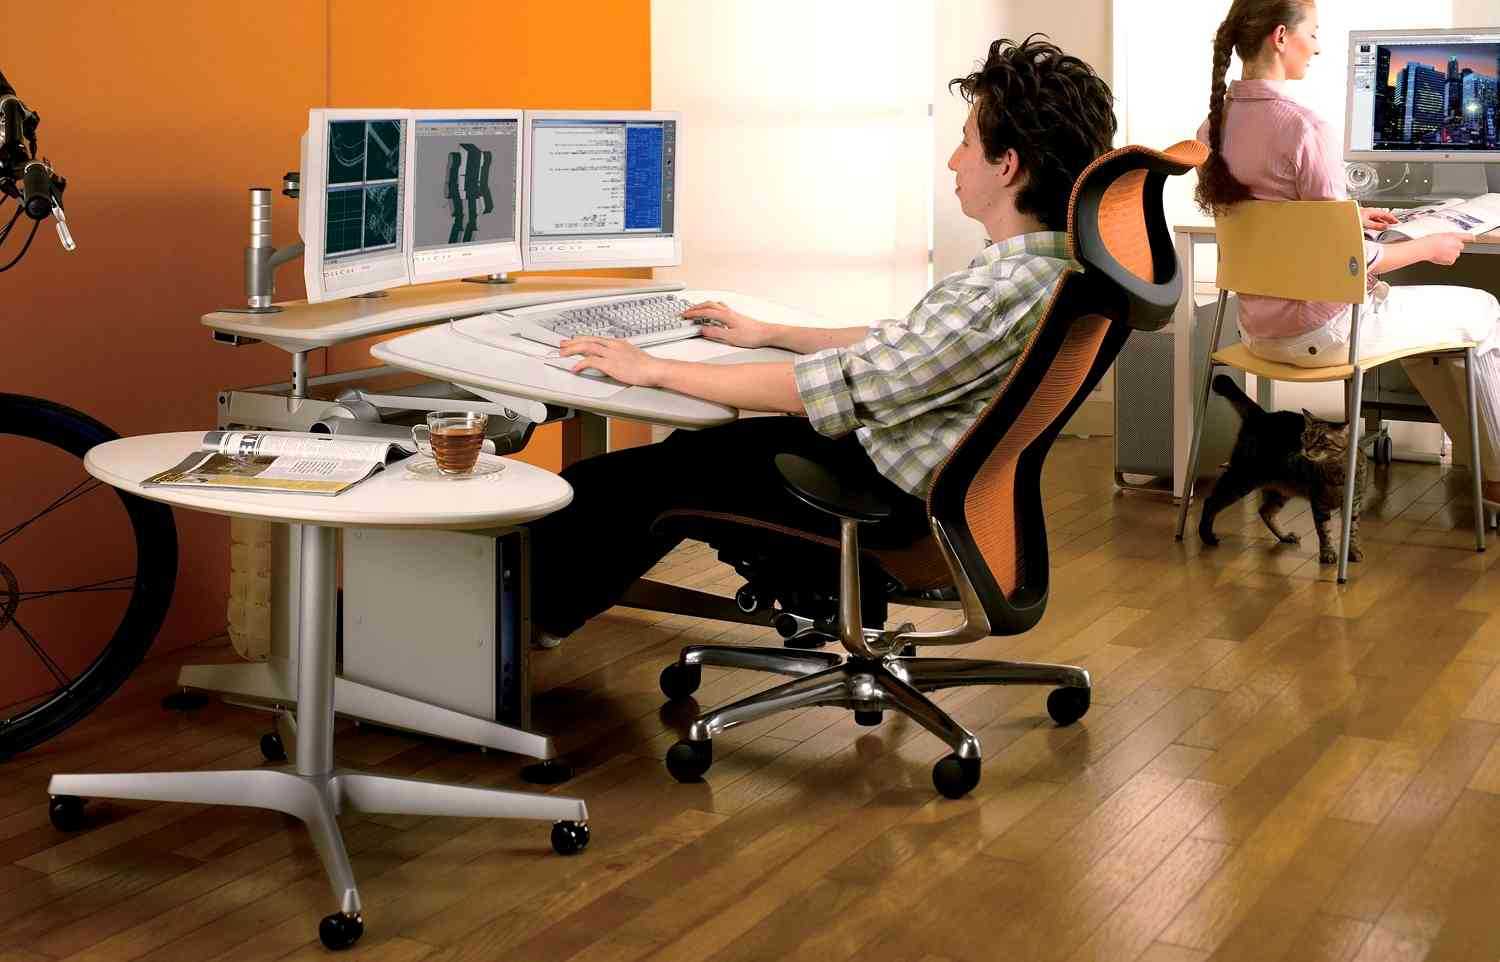 Достоинства и недостатки ламината для офиса + как не испортить ламинат колесиками офисных кресел